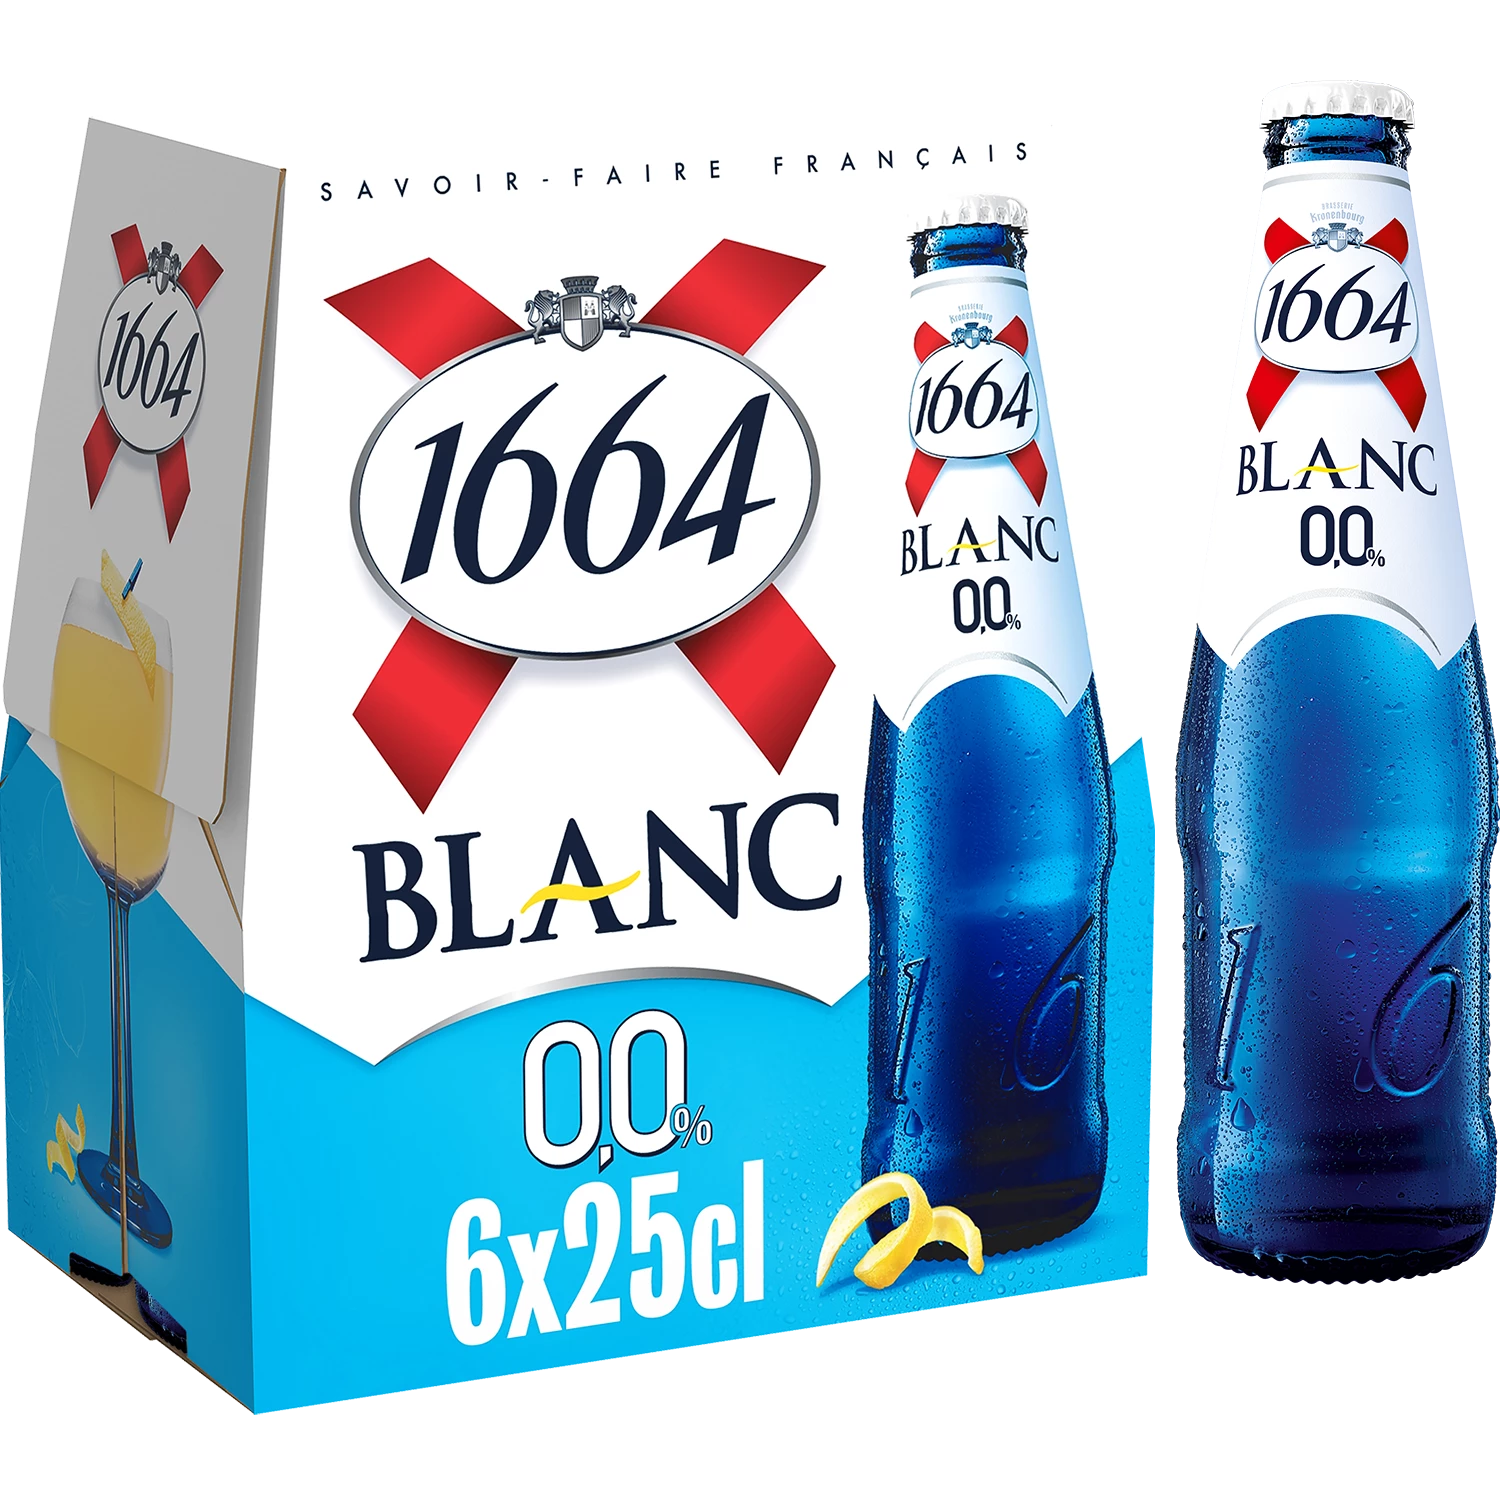 1664 Blanc 6x25cl 0d